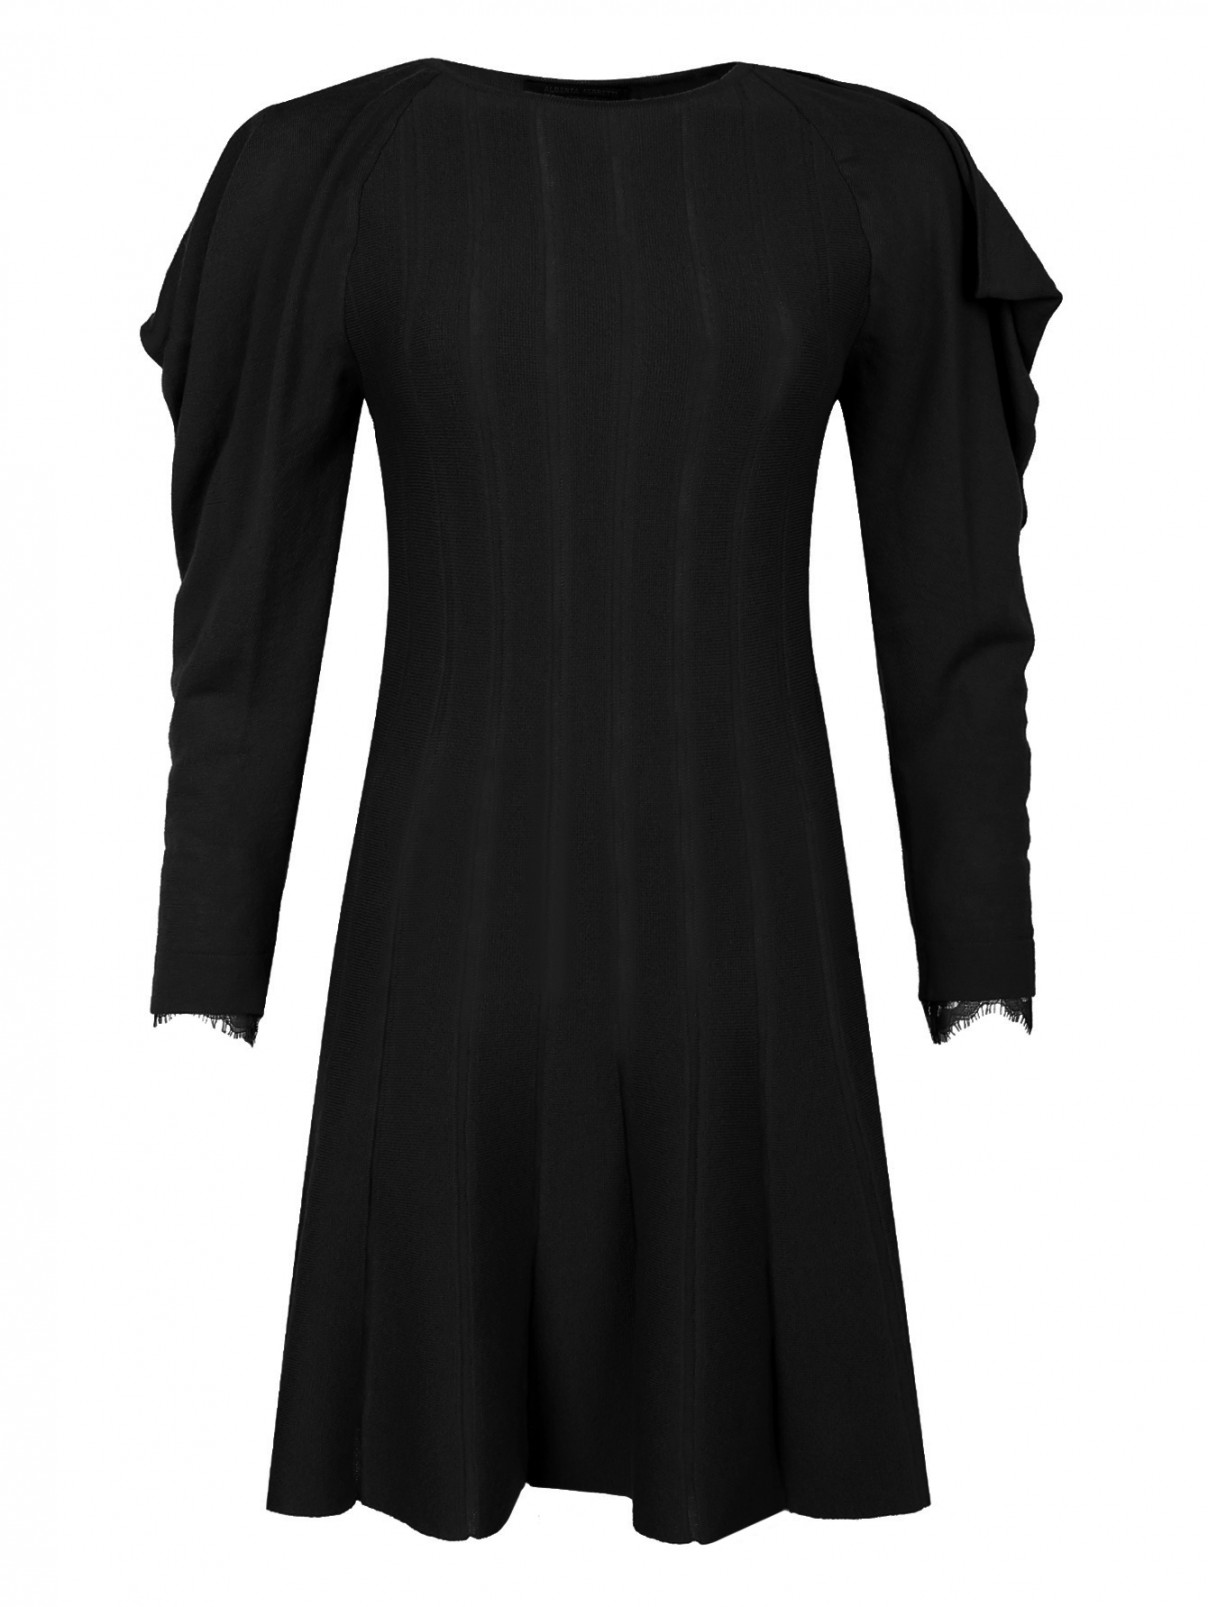 Платье из шерсти с объемными рукавами Alberta Ferretti  –  Общий вид  – Цвет:  Черный